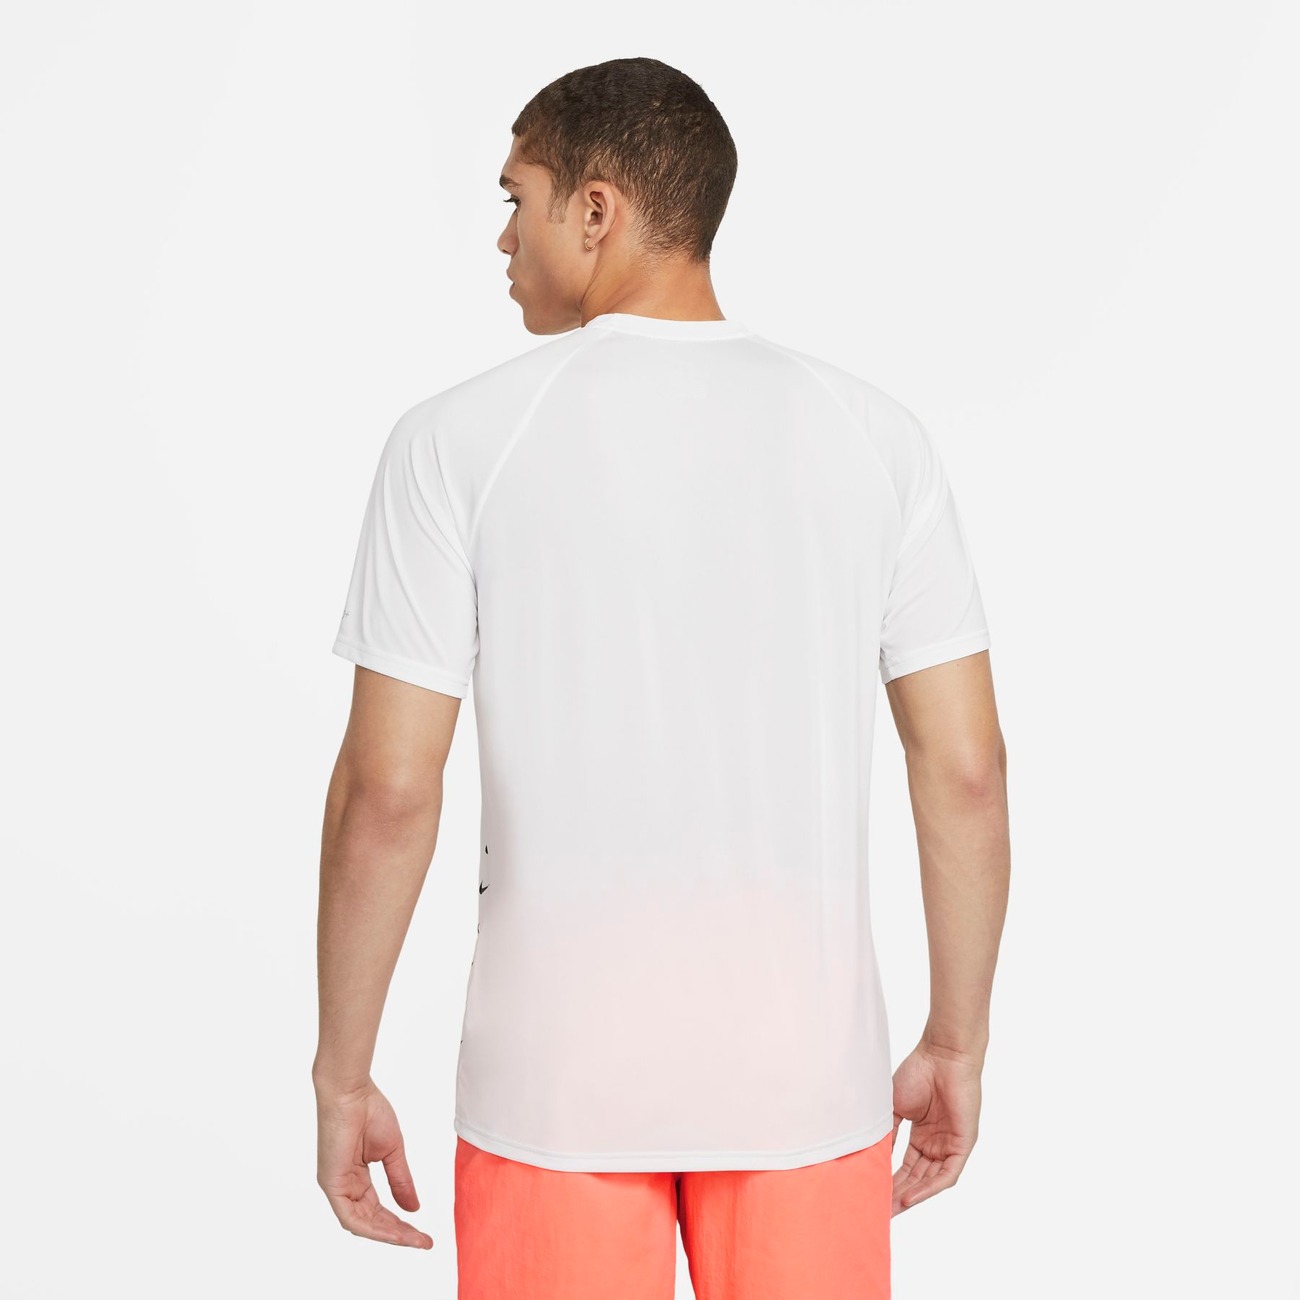 Camiseta Nike Hydroguard MultiSwoosh UV Masculina - Foto 2